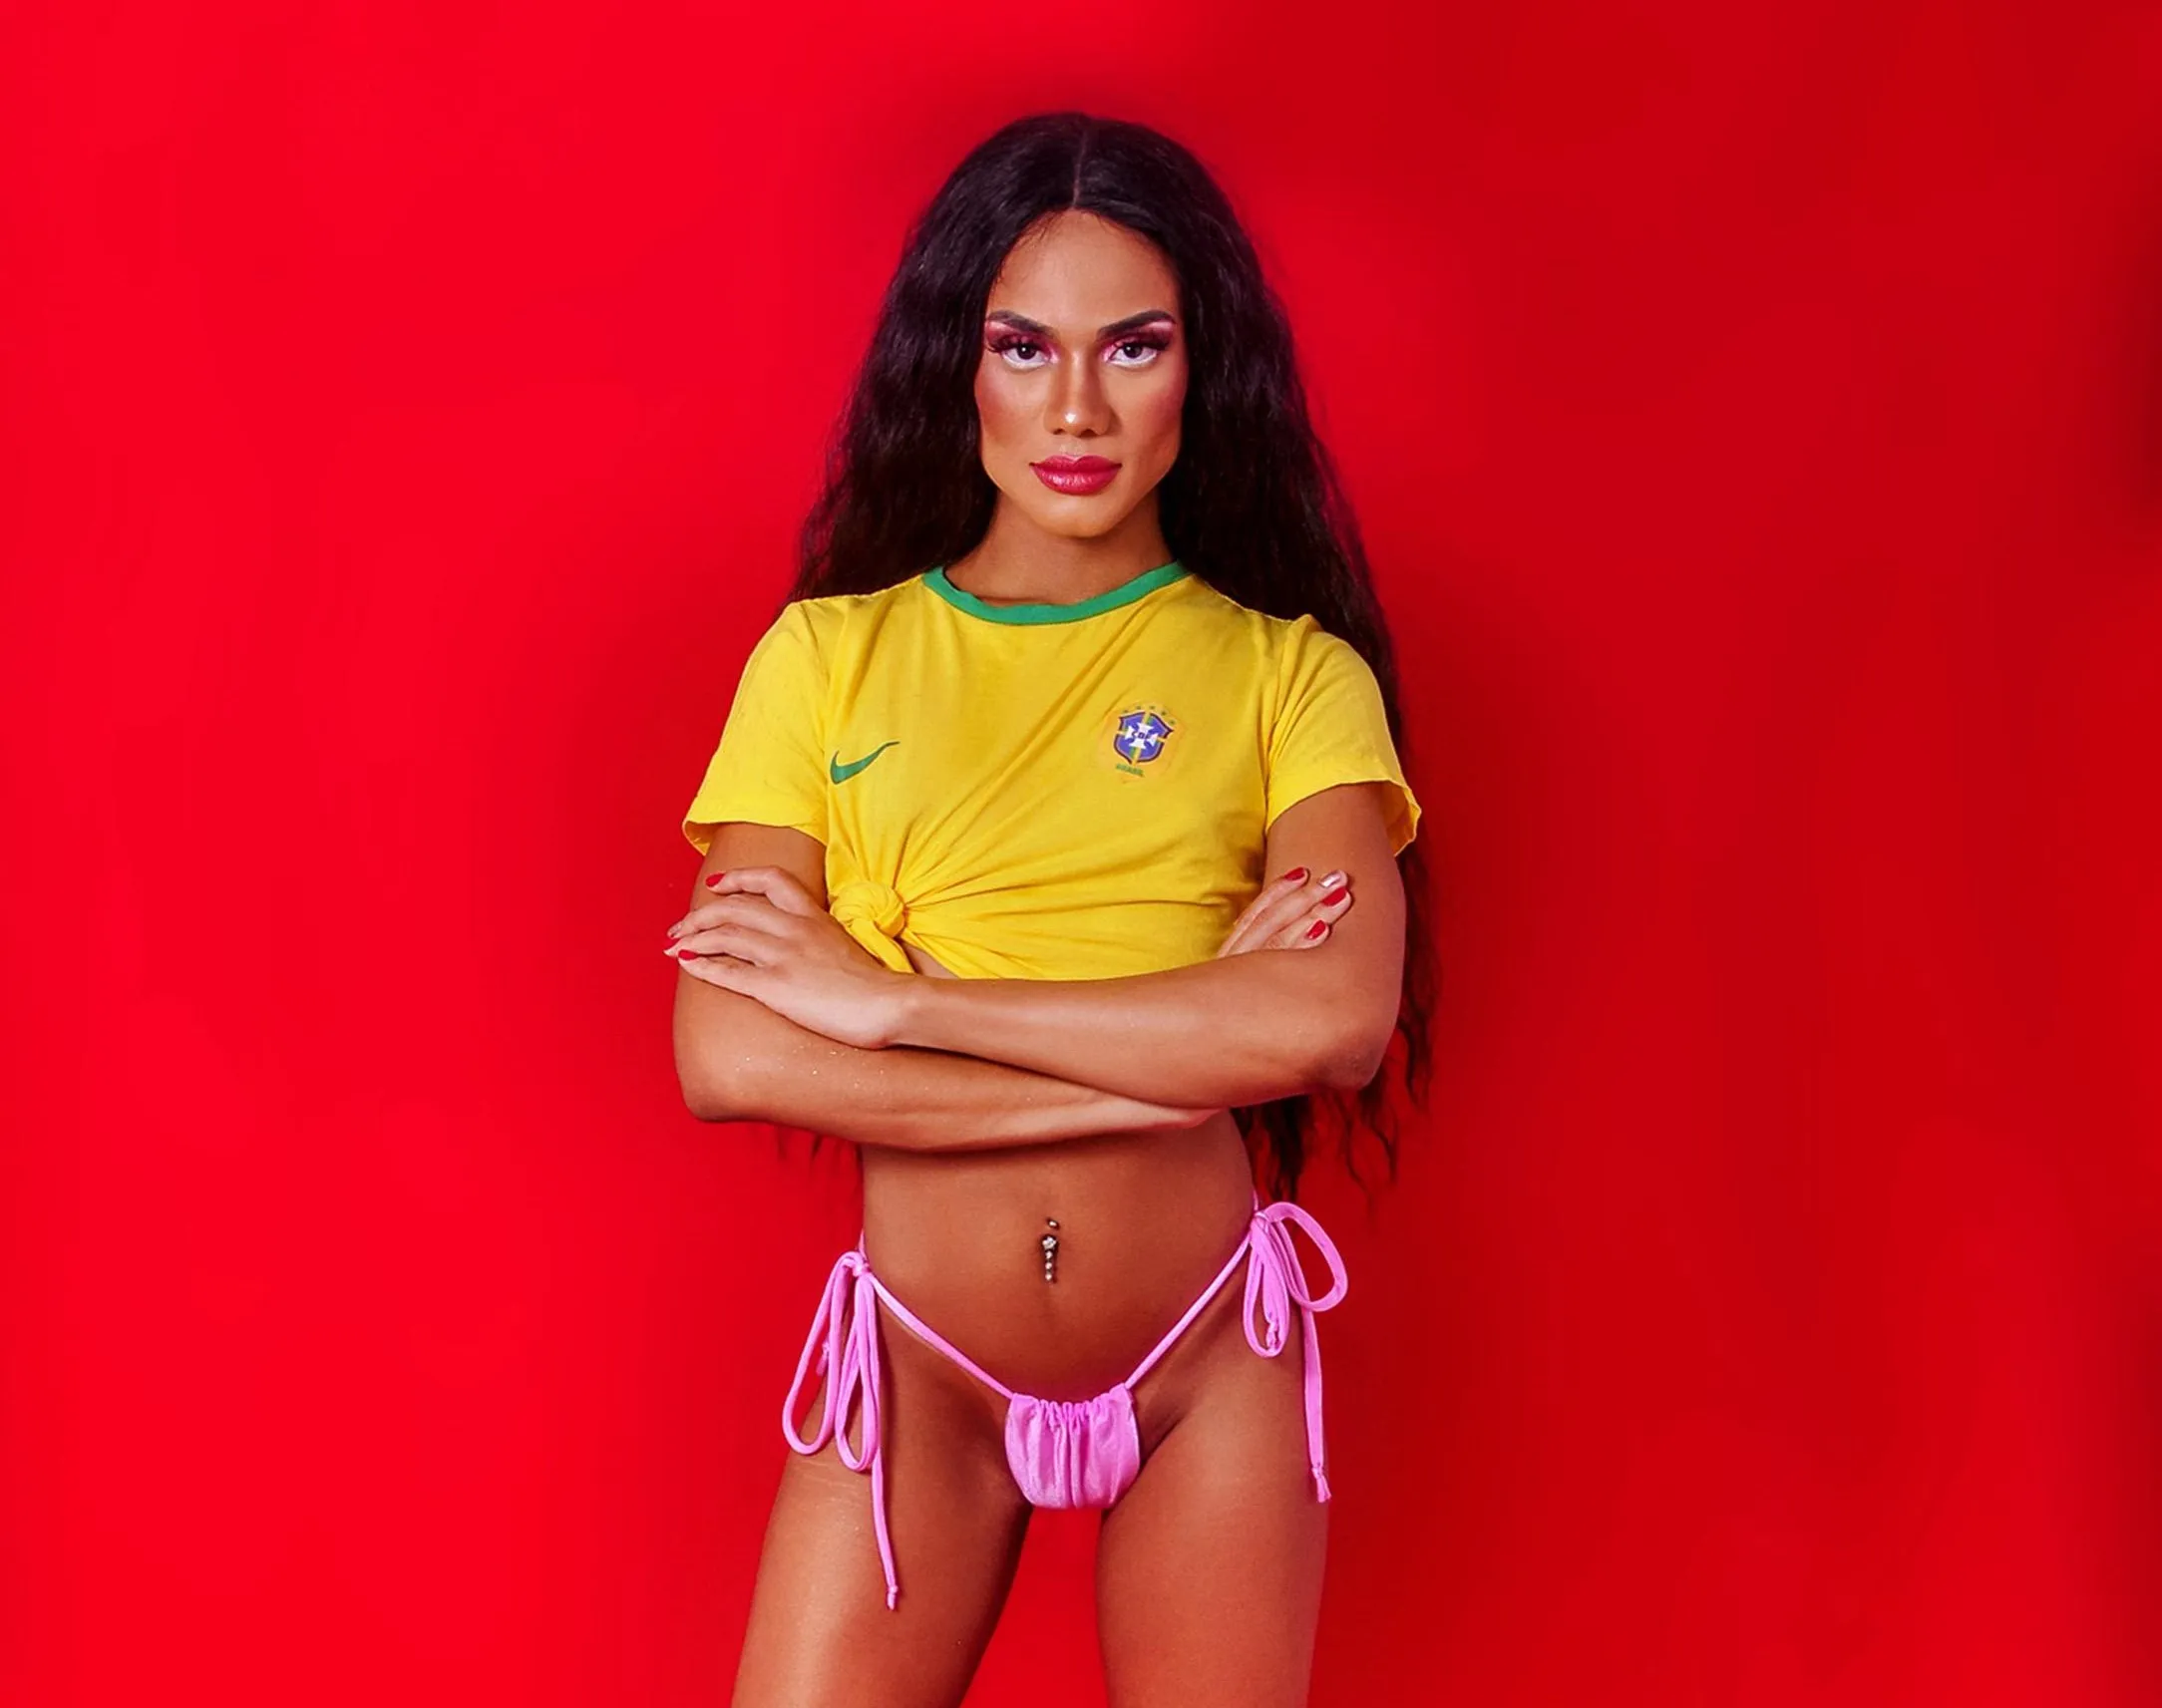 A cantora Nathalia Araújo, conhecida como A Ninfeta, já participou da Parada LGBTQIAPN+ e Carnaval de Salvador